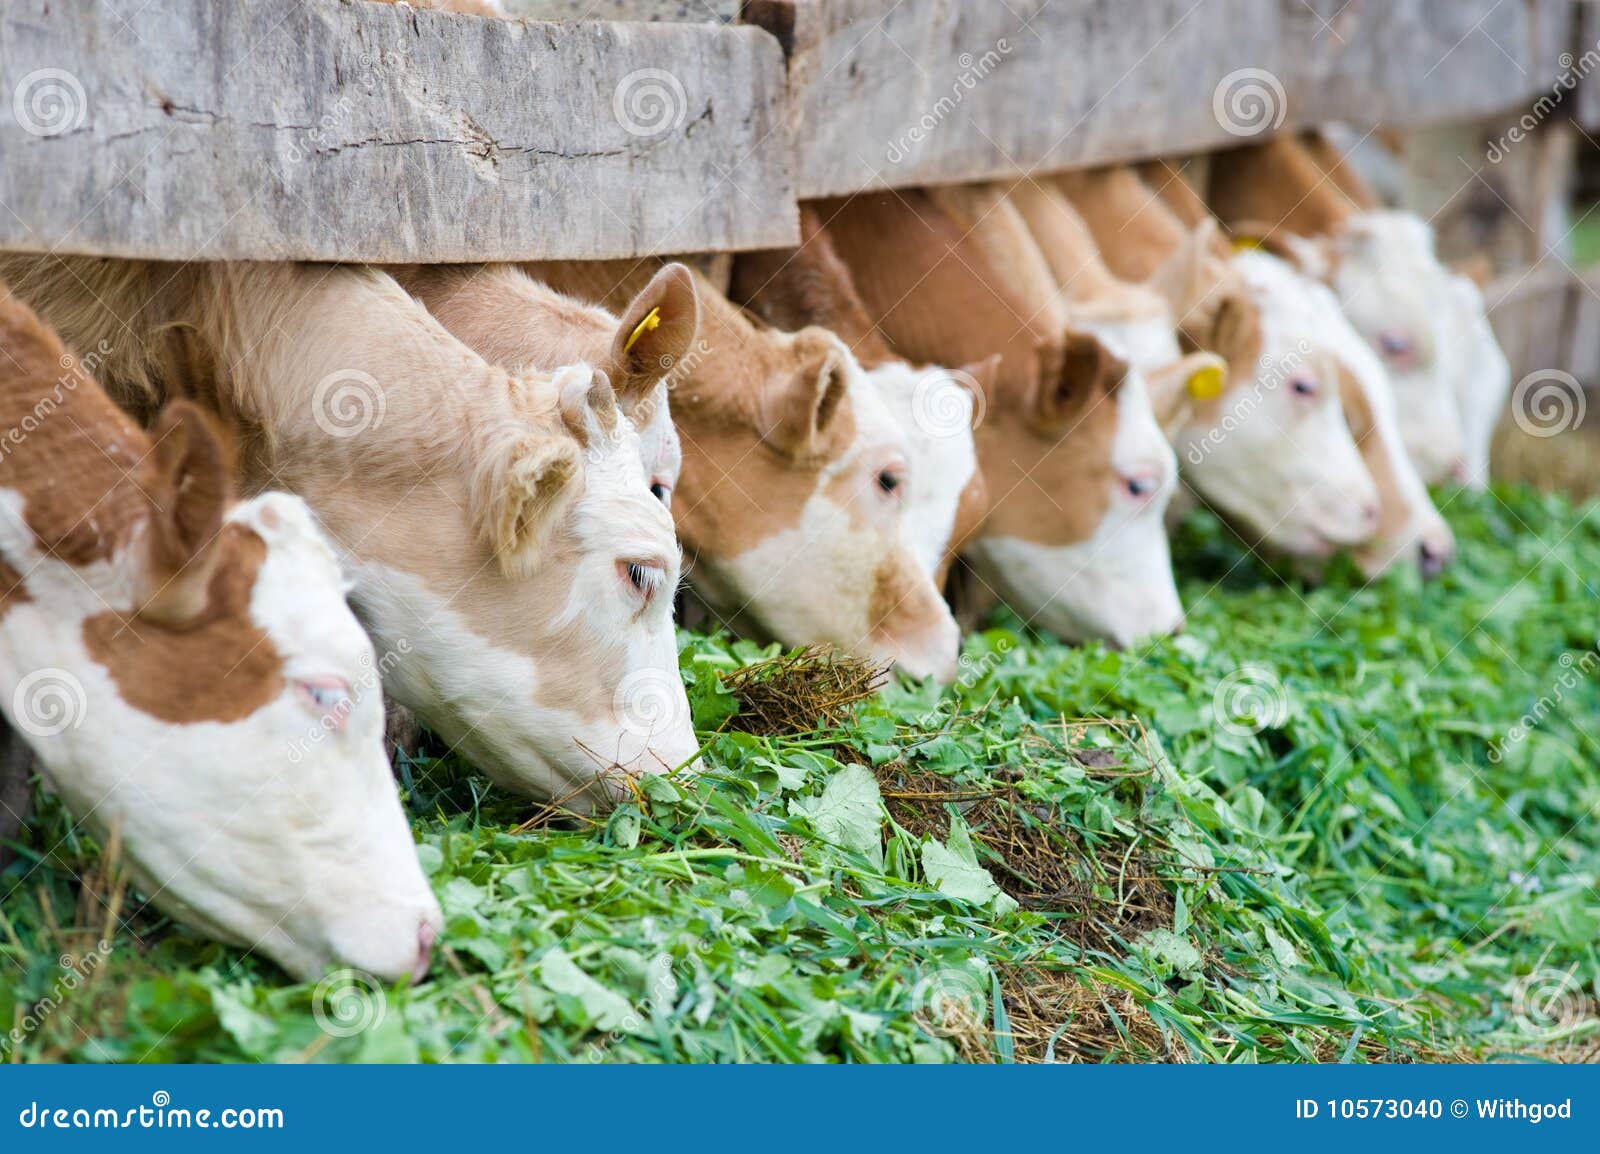 calves eating green rich fodder